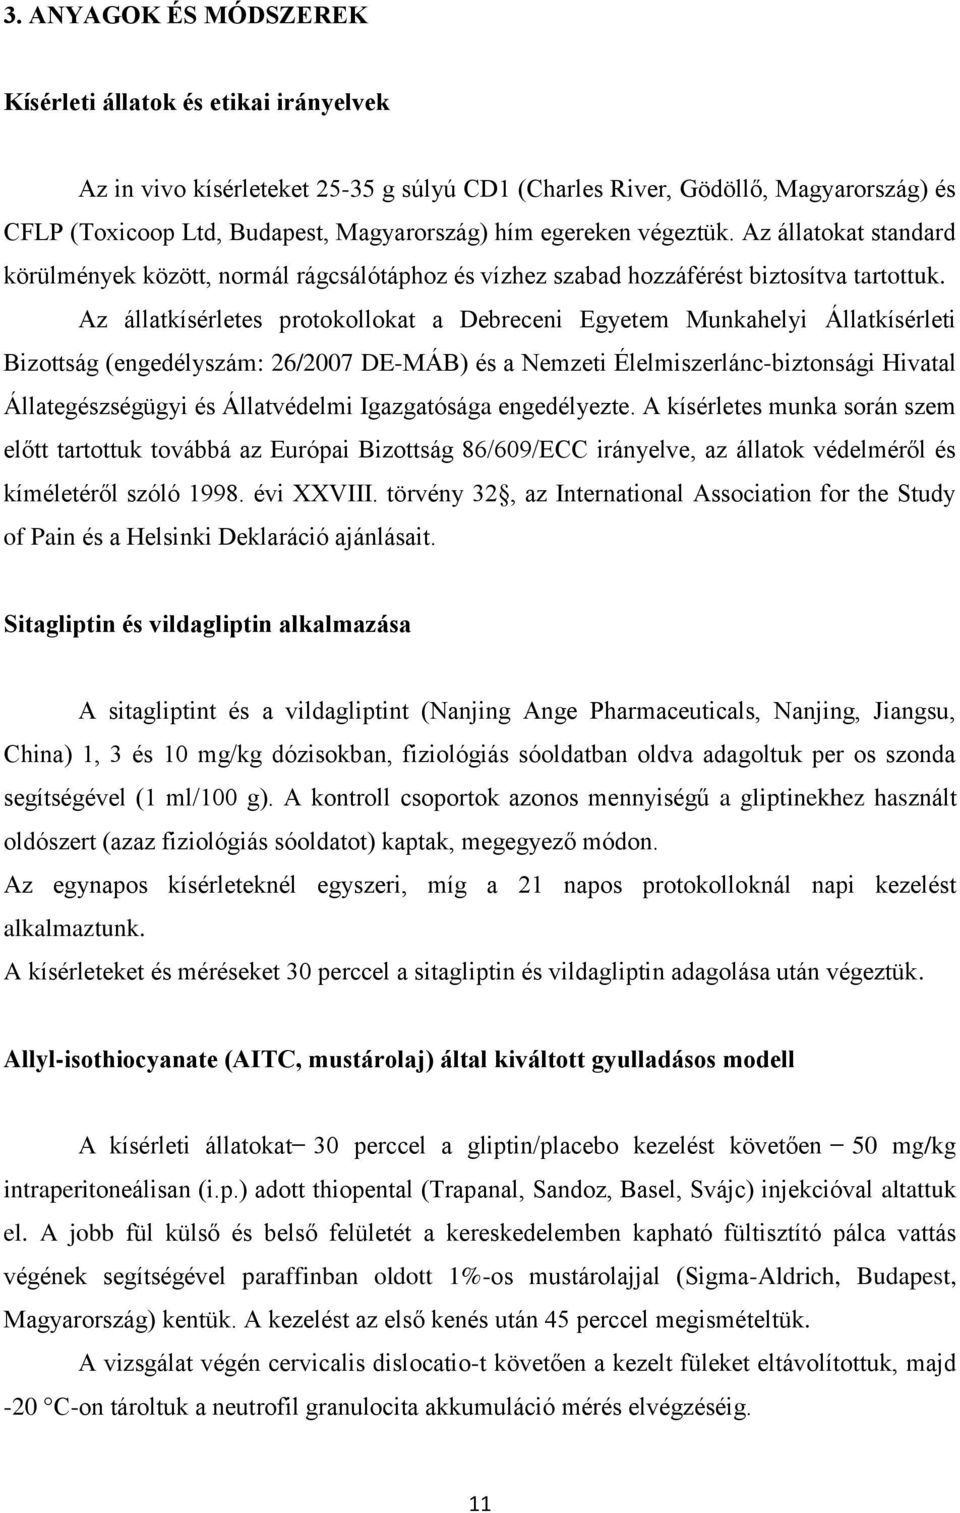 Az állatkísérletes protokollokat a Debreceni Egyetem Munkahelyi Állatkísérleti Bizottság (engedélyszám: 26/2007 DE-MÁB) és a Nemzeti Élelmiszerlánc-biztonsági Hivatal Állategészségügyi és